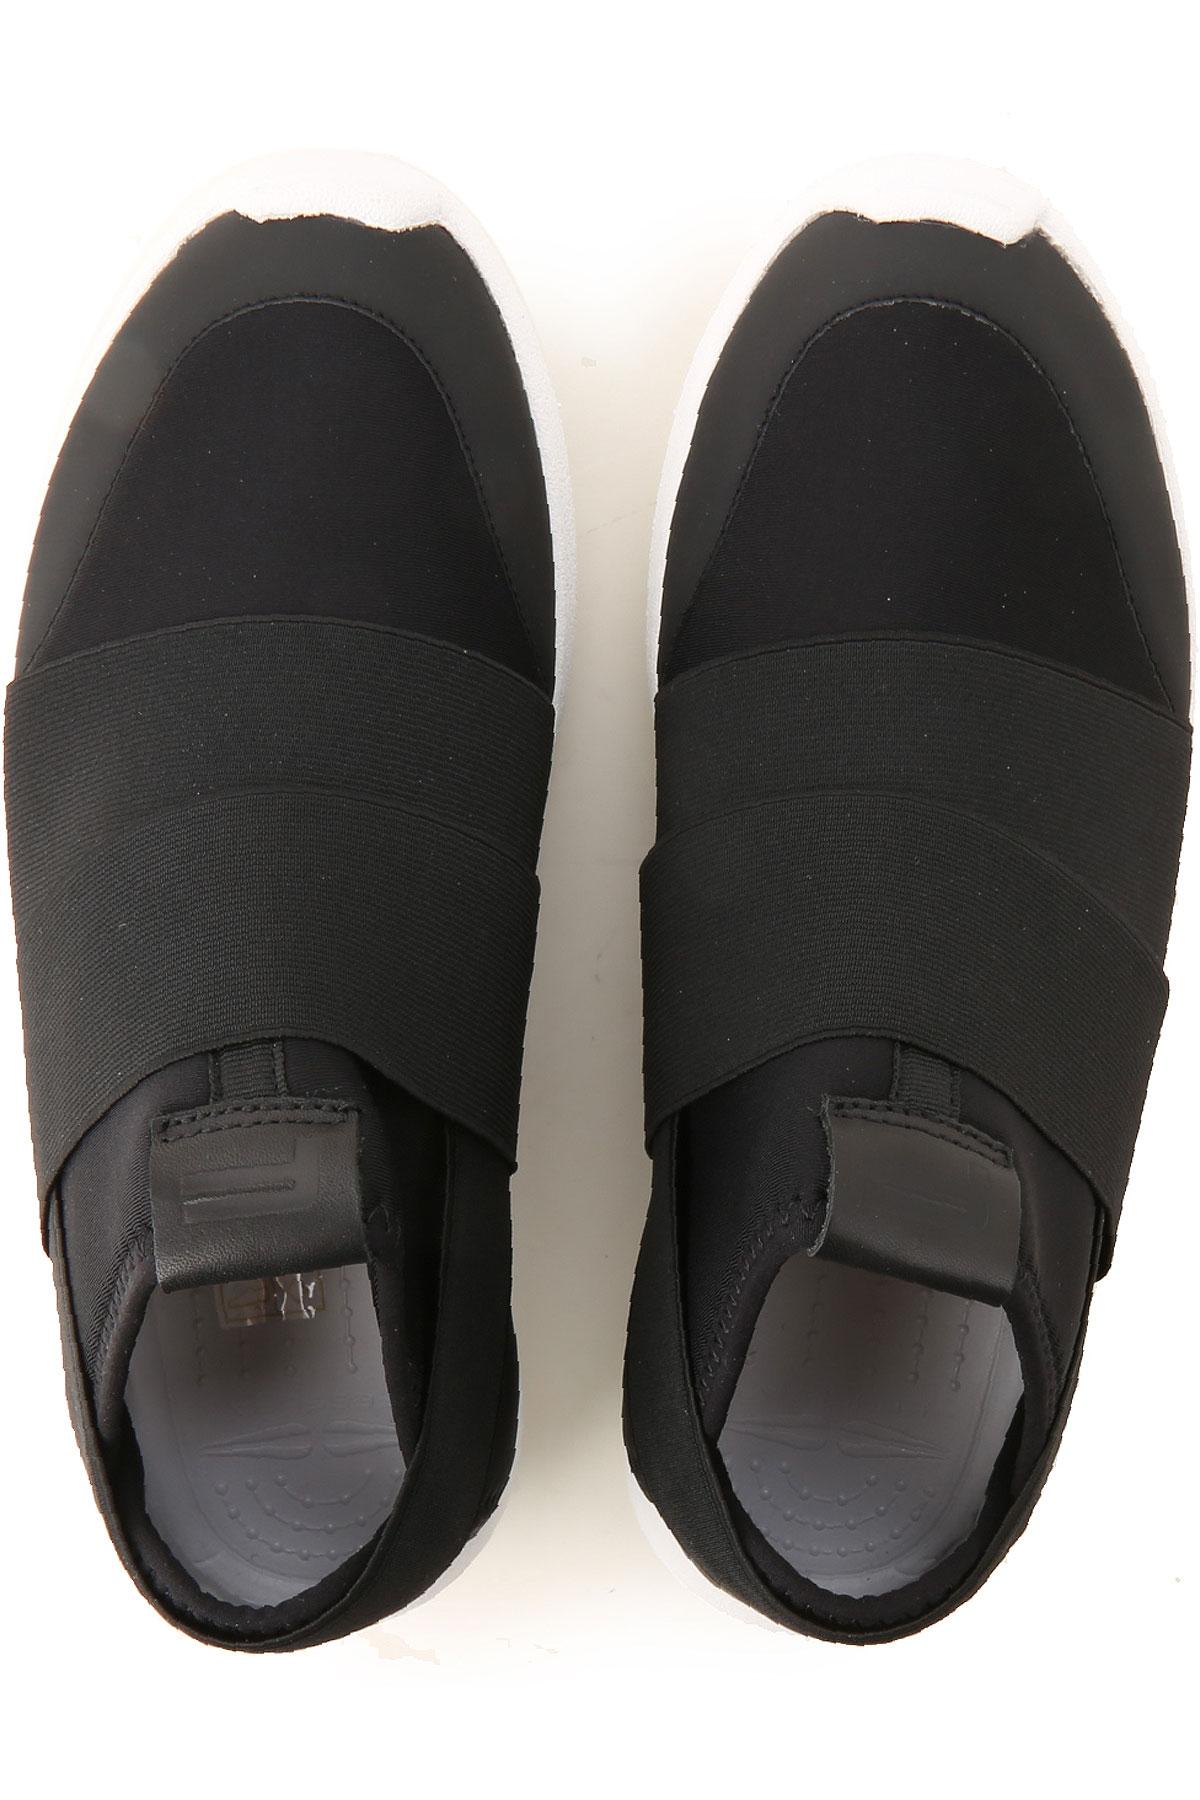 Fessura Slip On Sneakers For Women On Sale in Black - Lyst